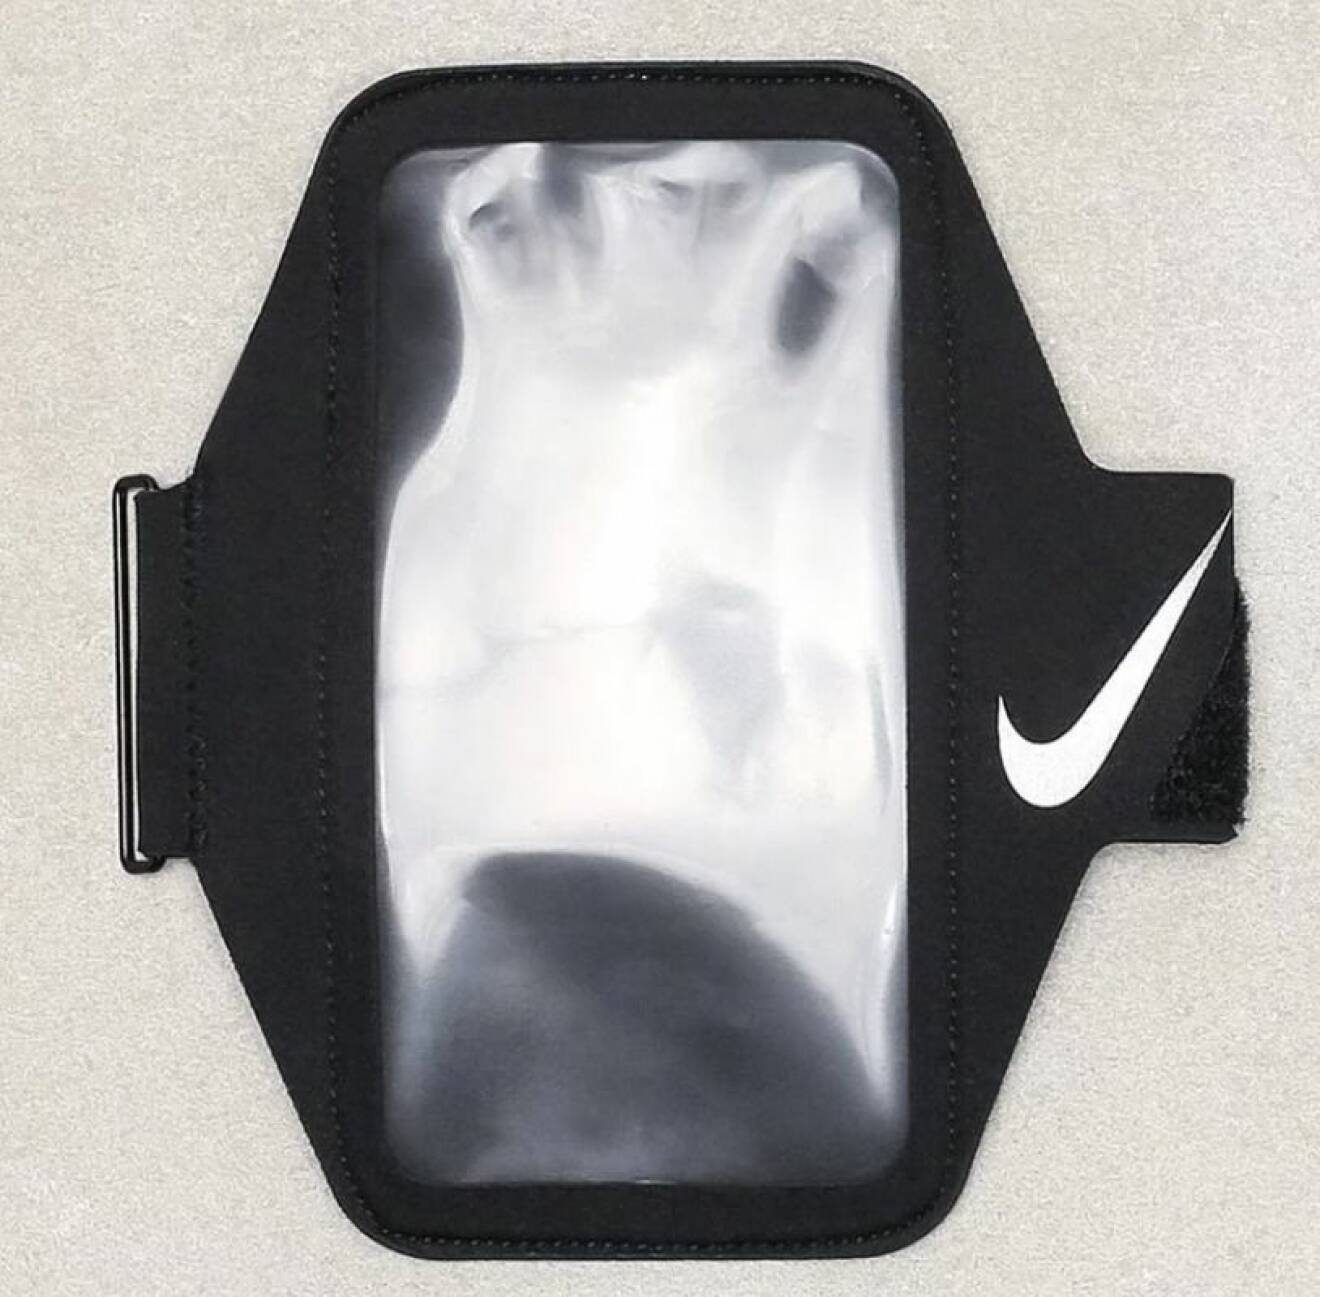 Håll din telefon på plats med en smidig mobilhållare, som denna från Nike.